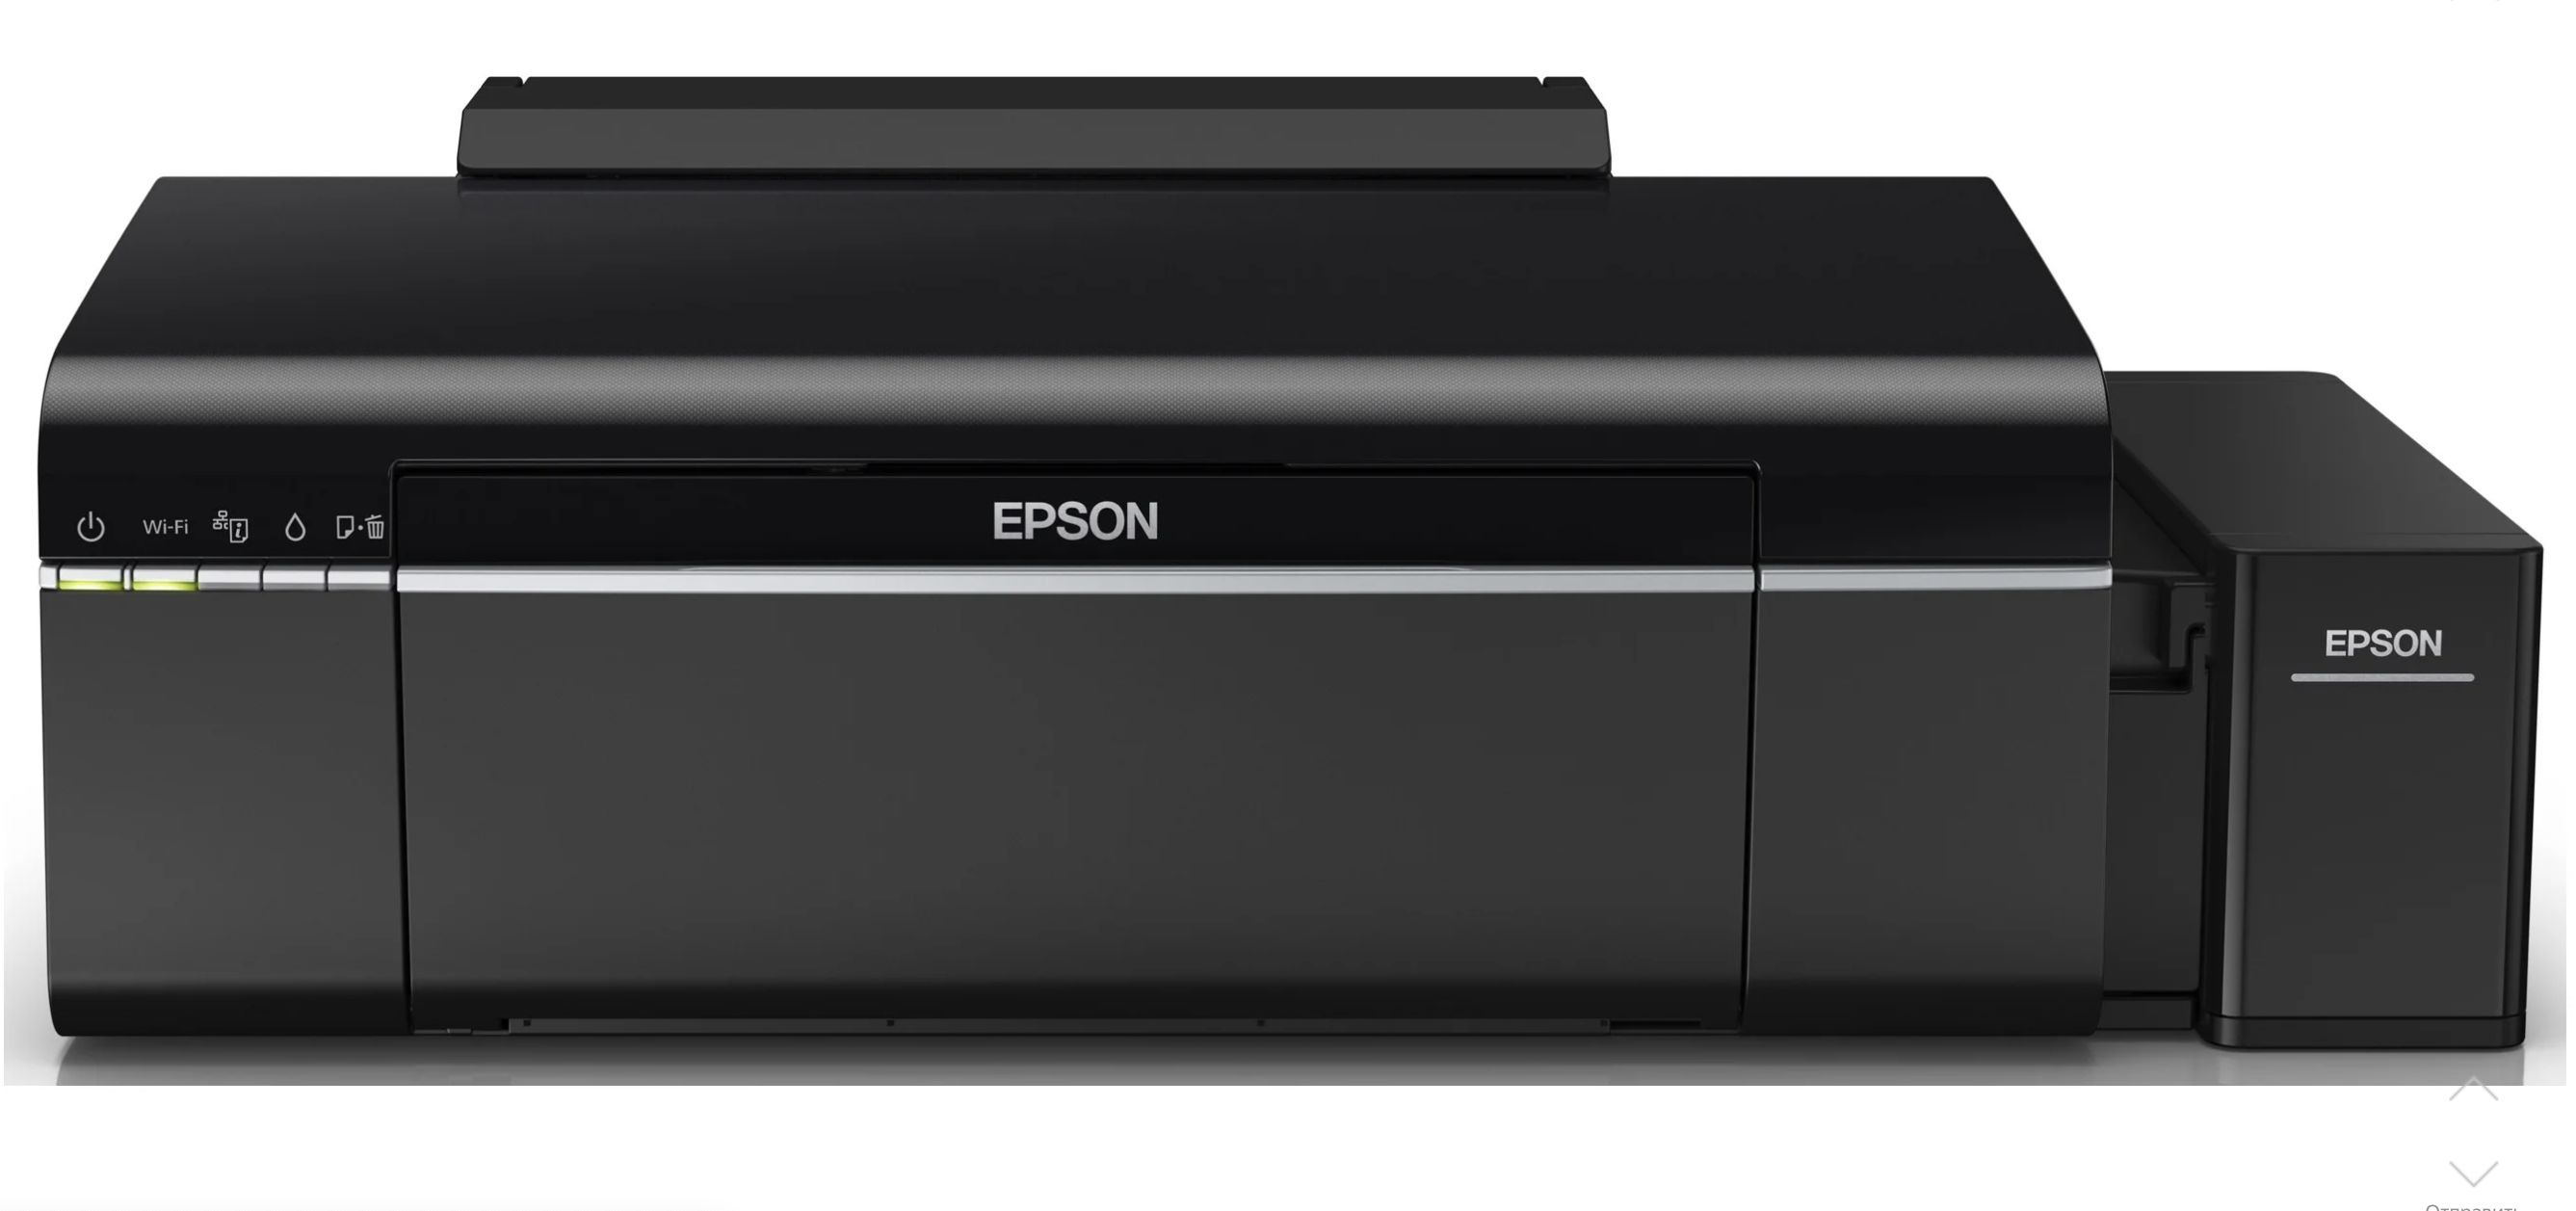 Epson l805 цены